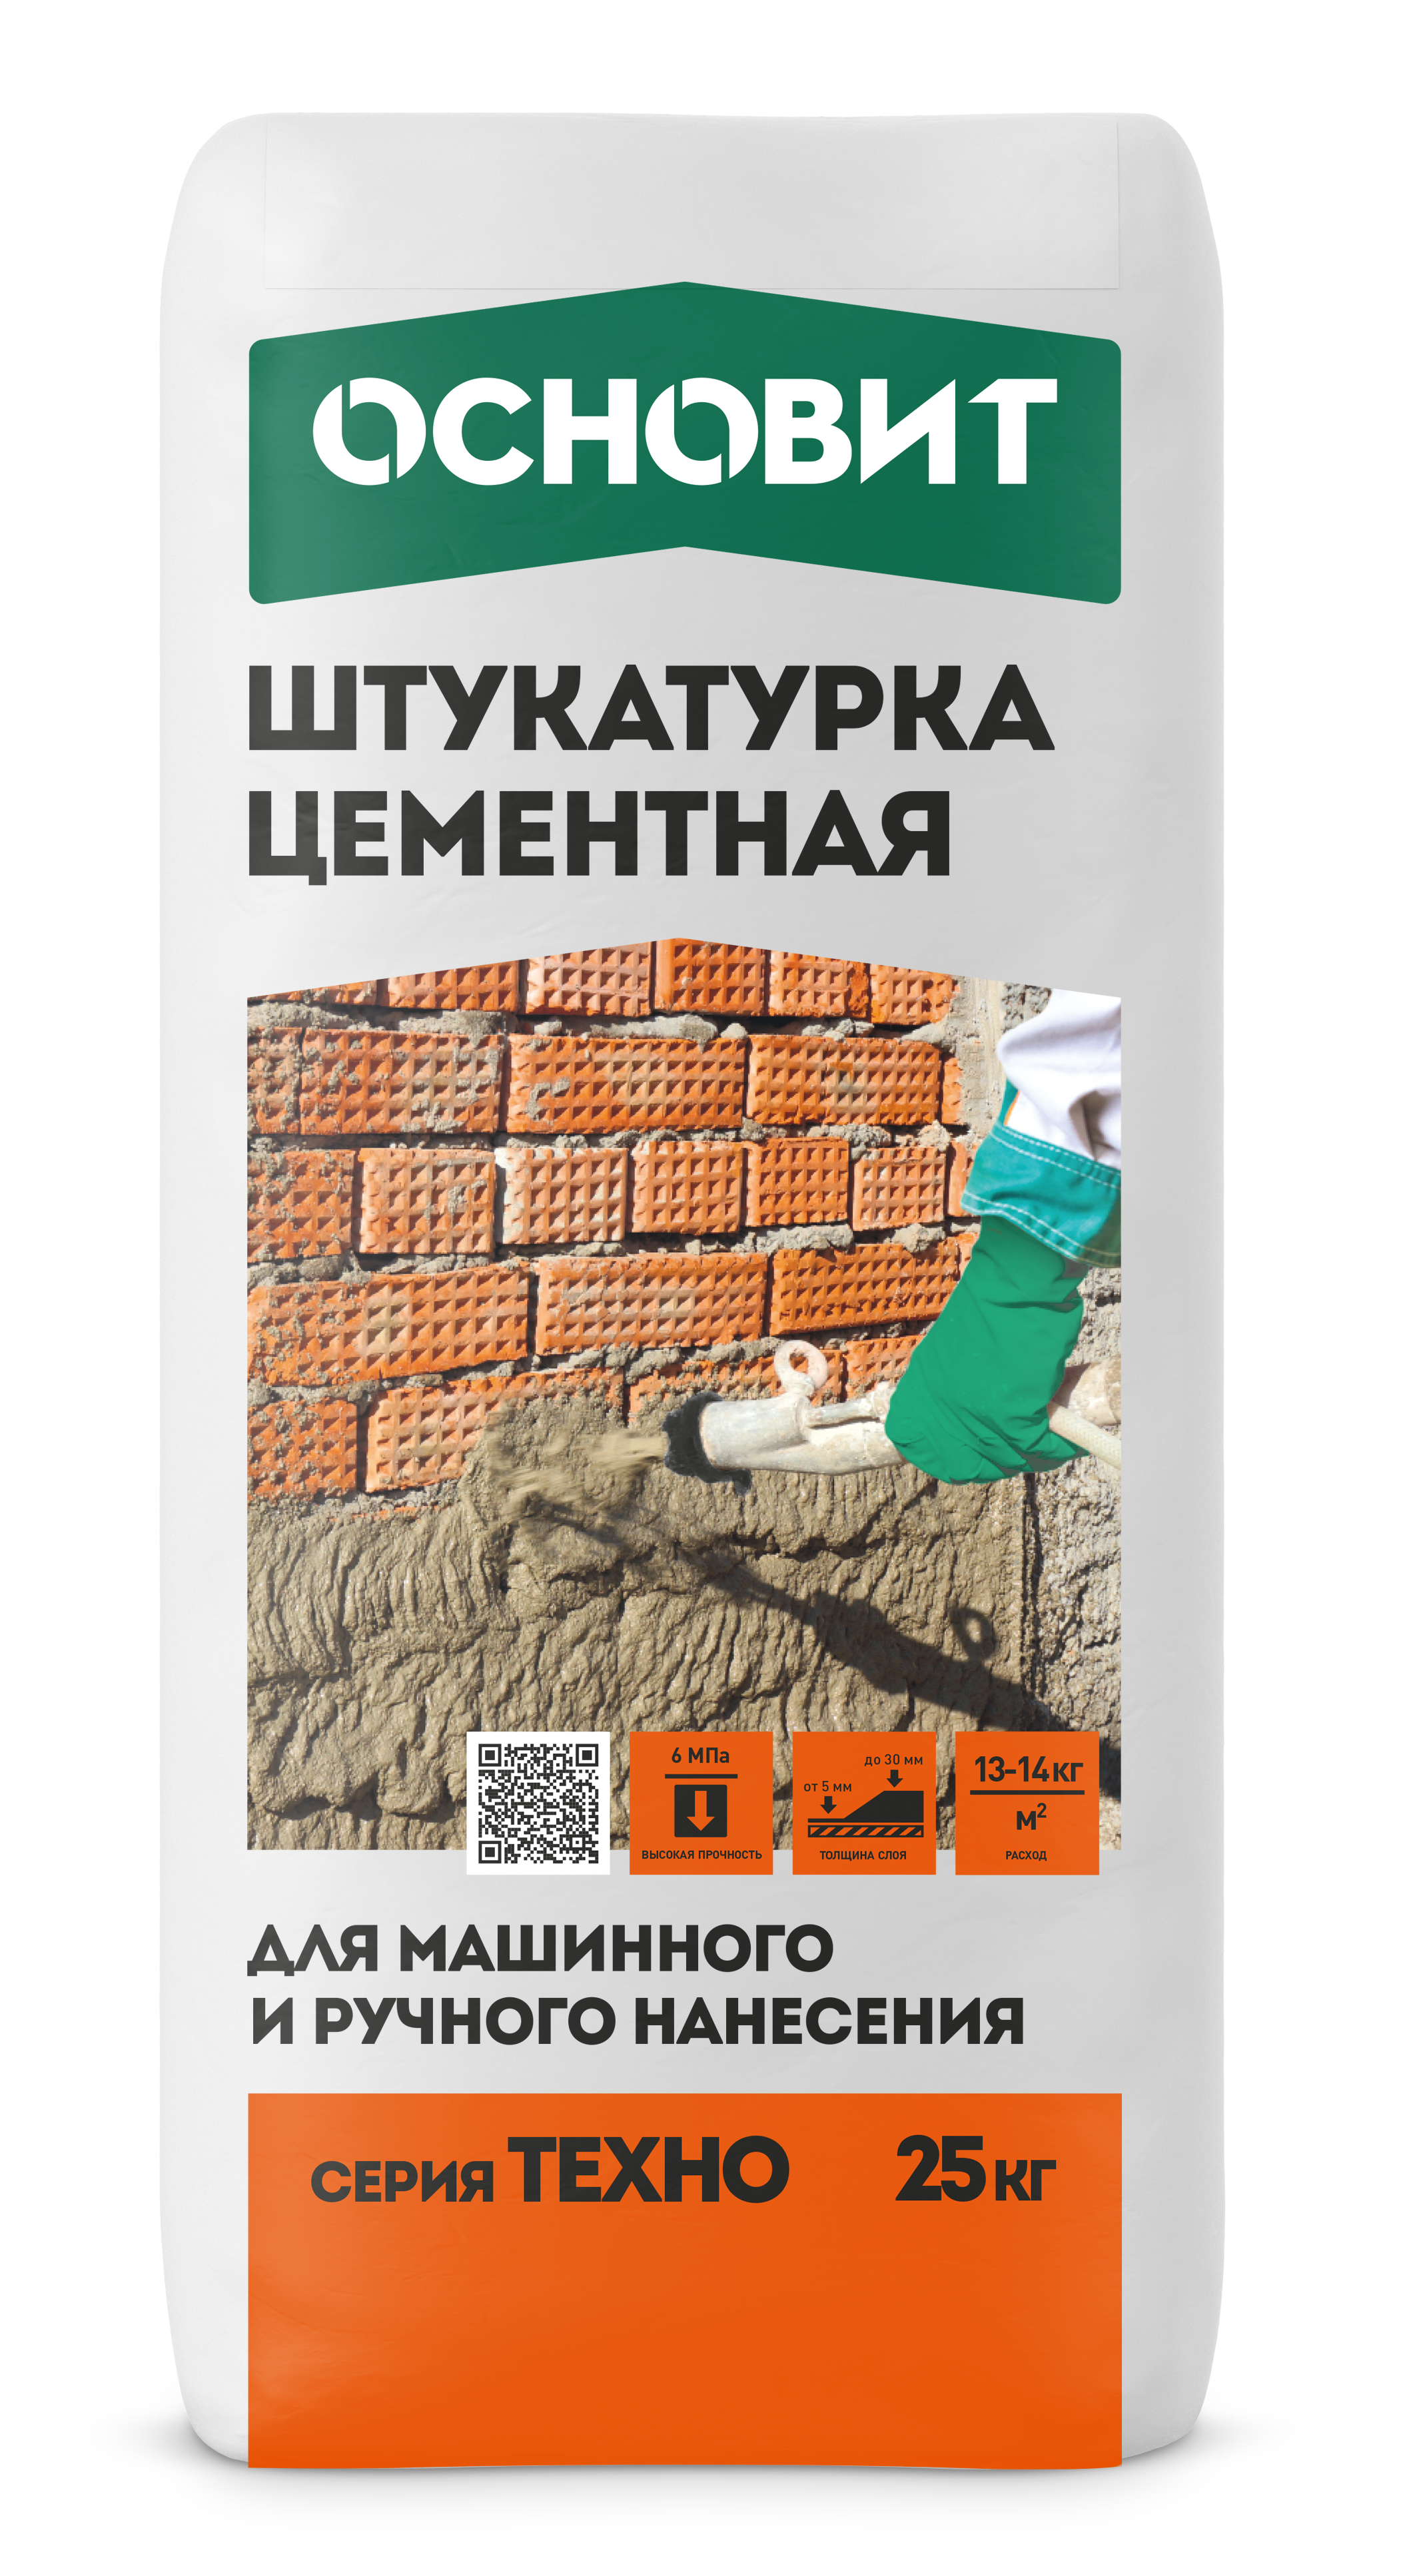 Штукатурка цементная Основит ТехноРС 21М 25 кг по цене 347 ₽/шт. купить в  Москве в интернет-магазине Леруа Мерлен